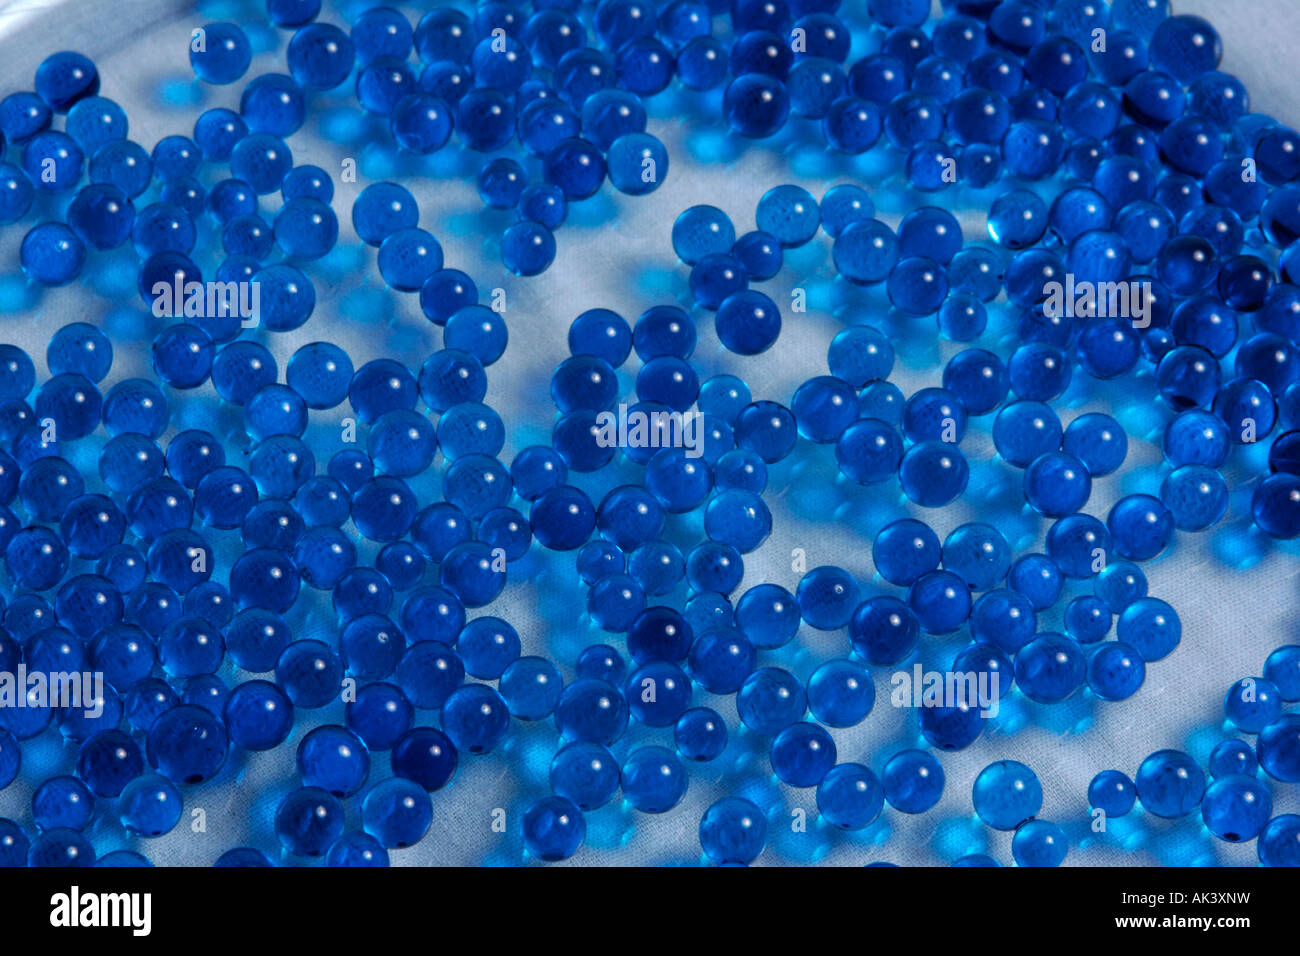 blue ball pattern Stock Photo